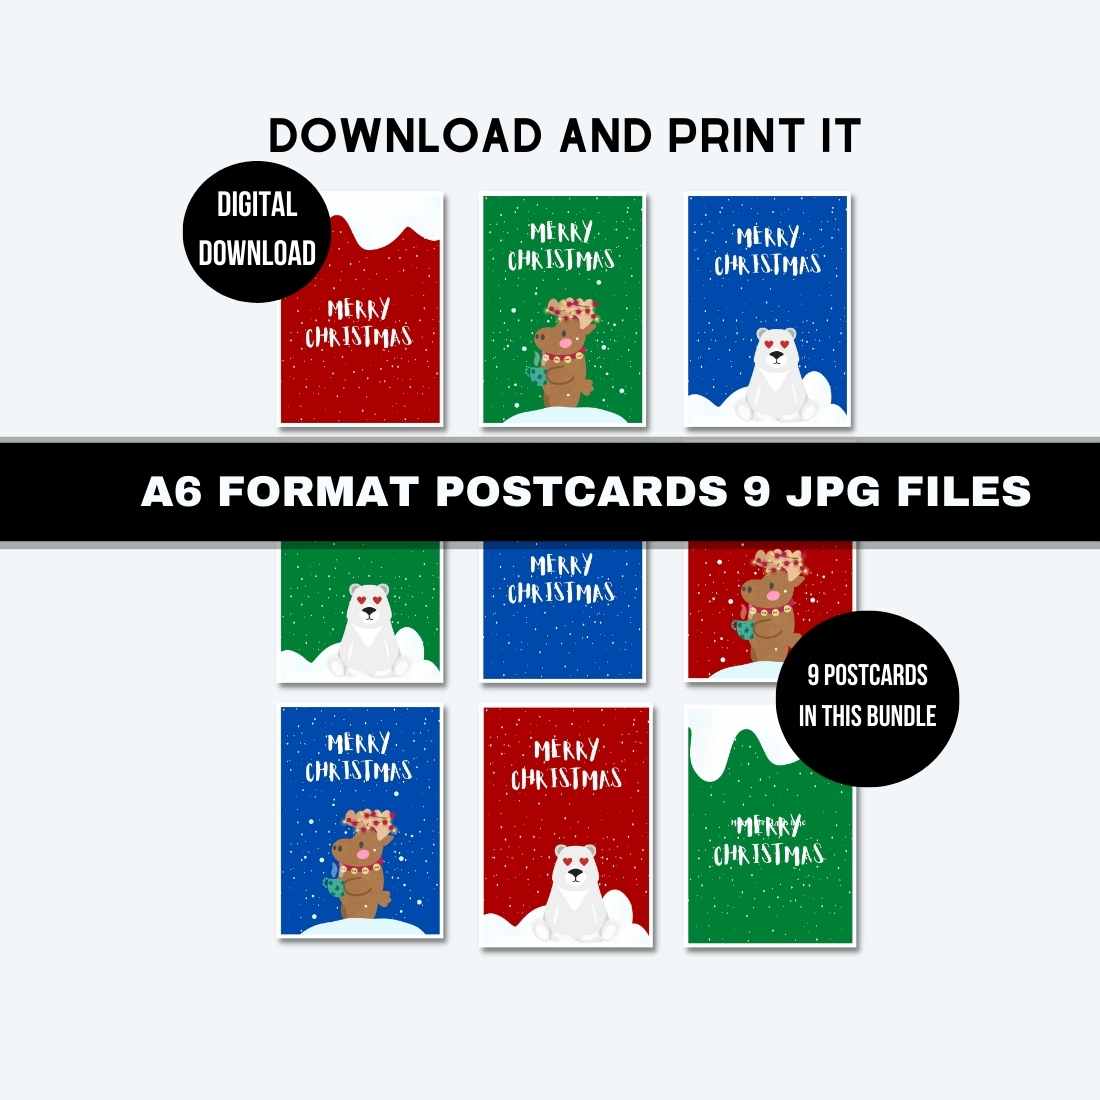 Christmas Printable Postcards Bundle main cover image.